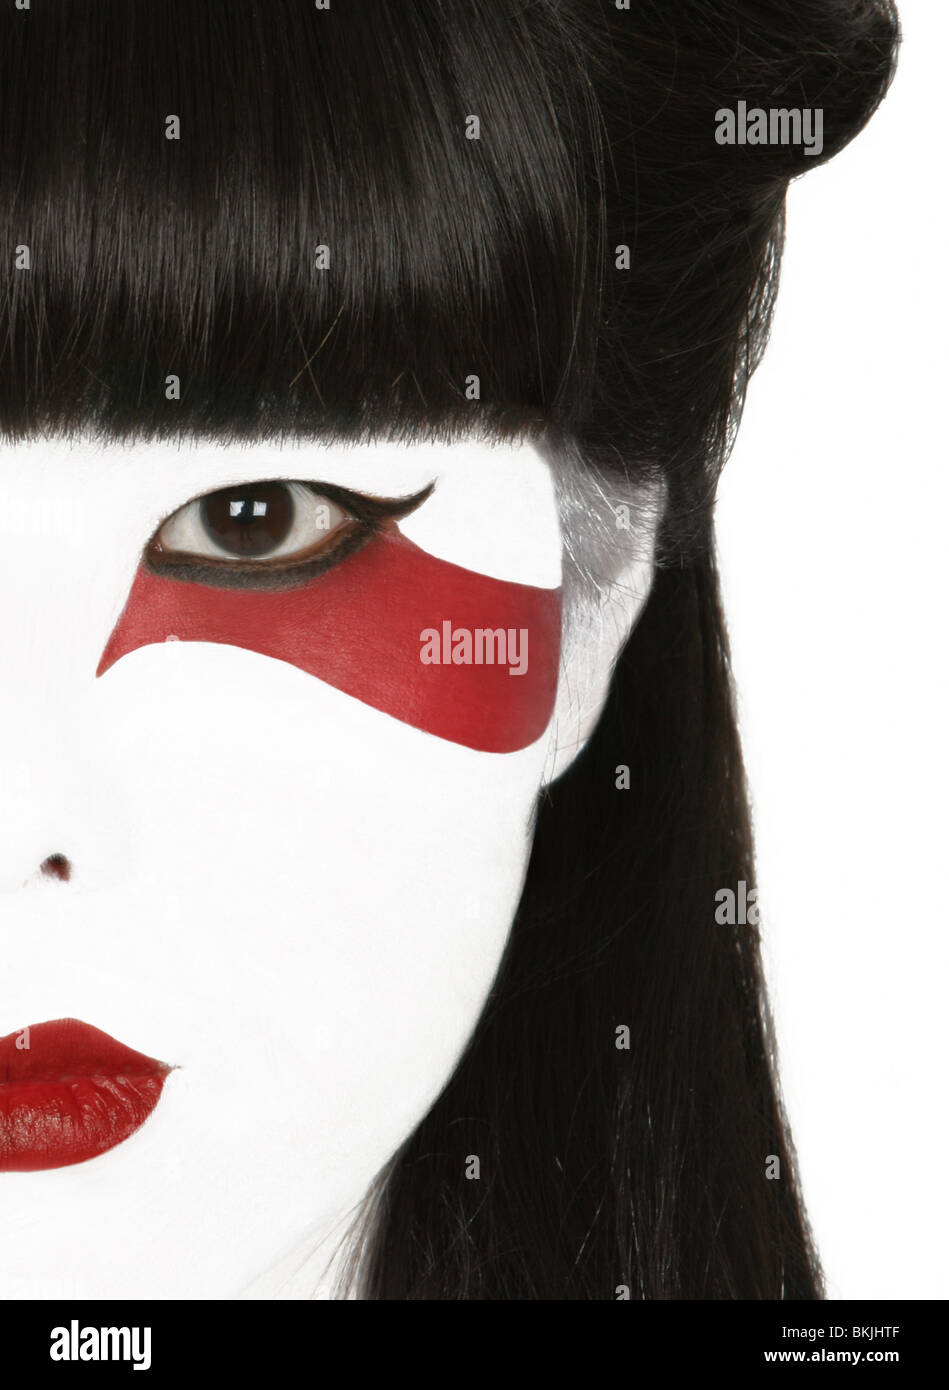 Una chiave di alta fotografia di un giapponese viso della bambina con la  geisha style make up e la stilizzazione di una striscia rossa sotto il suo  occhio sinistro Foto stock -